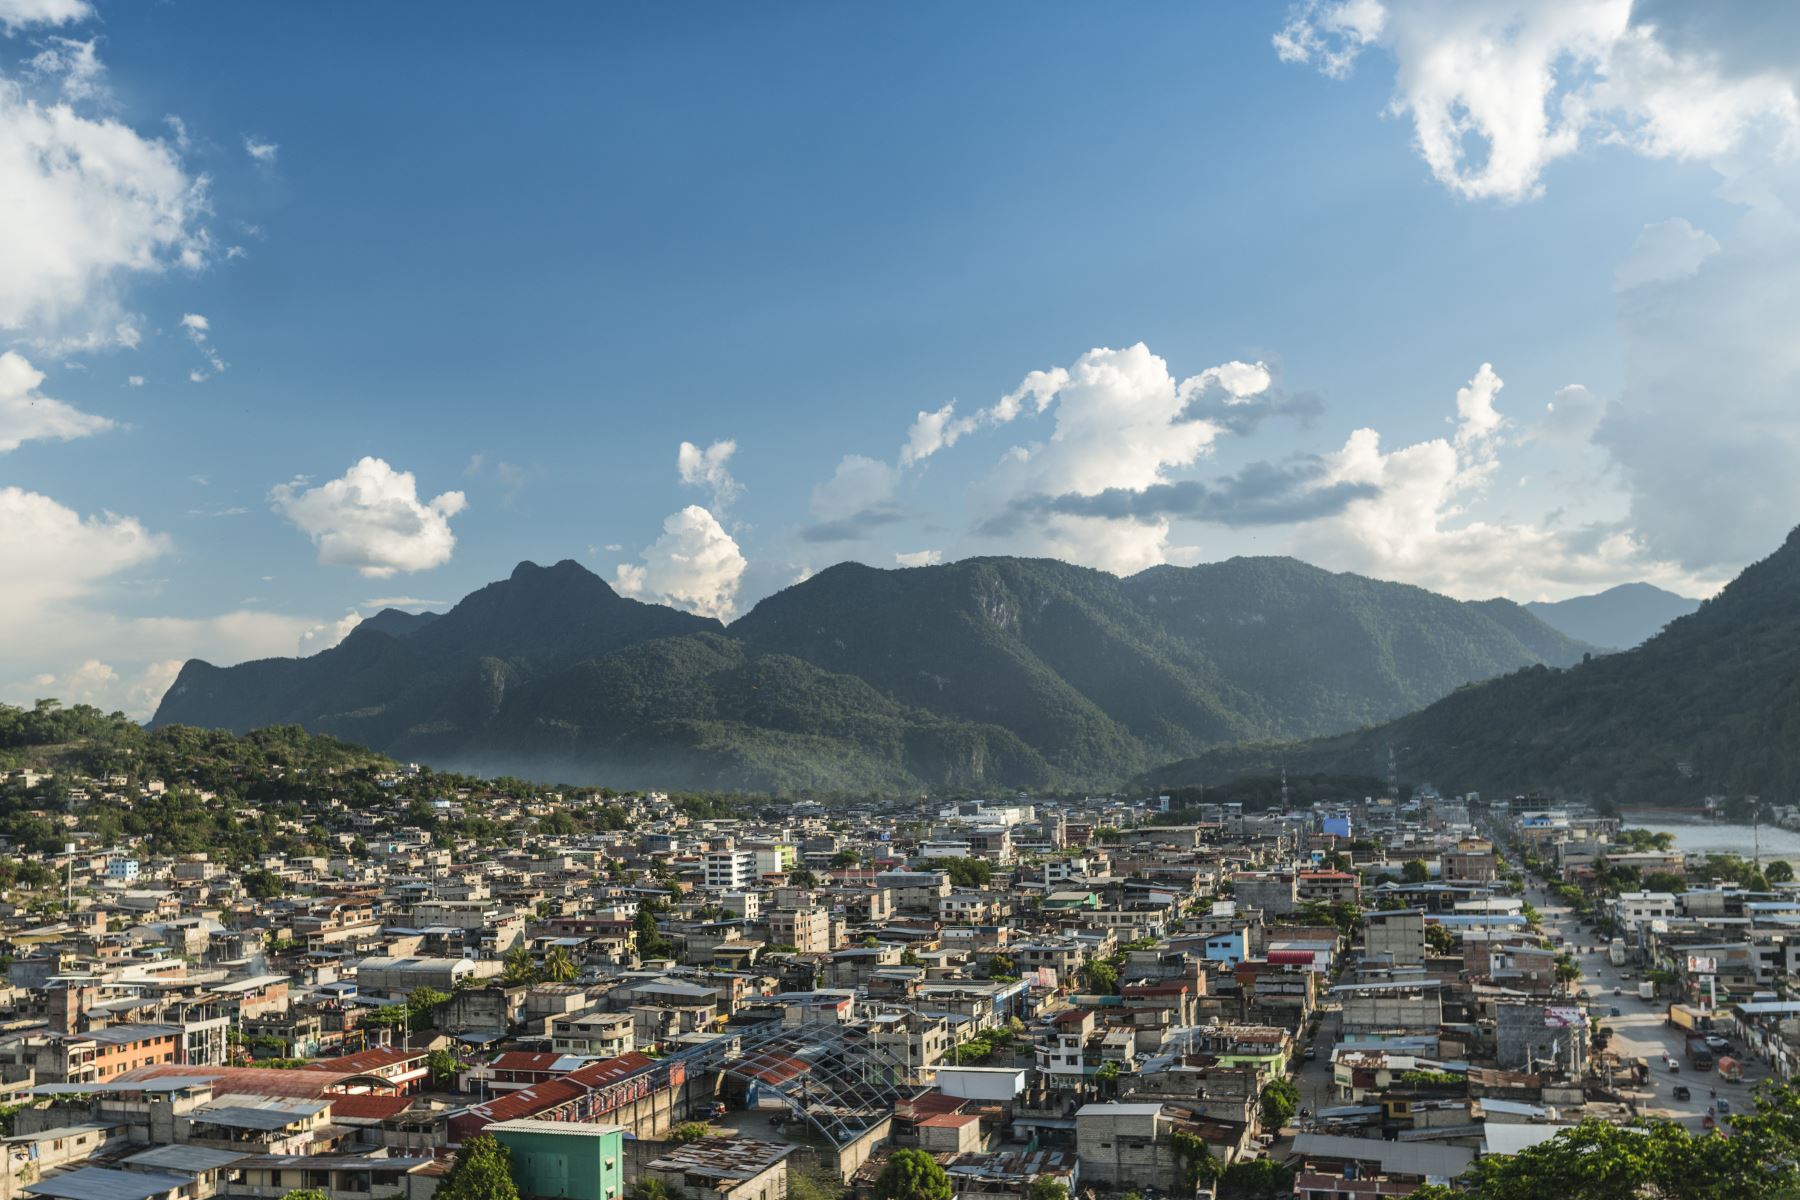 Ciudad de Tingo María con vista de La Bella Durmiente, en la región Huánuco.
Foto: PROMPERU